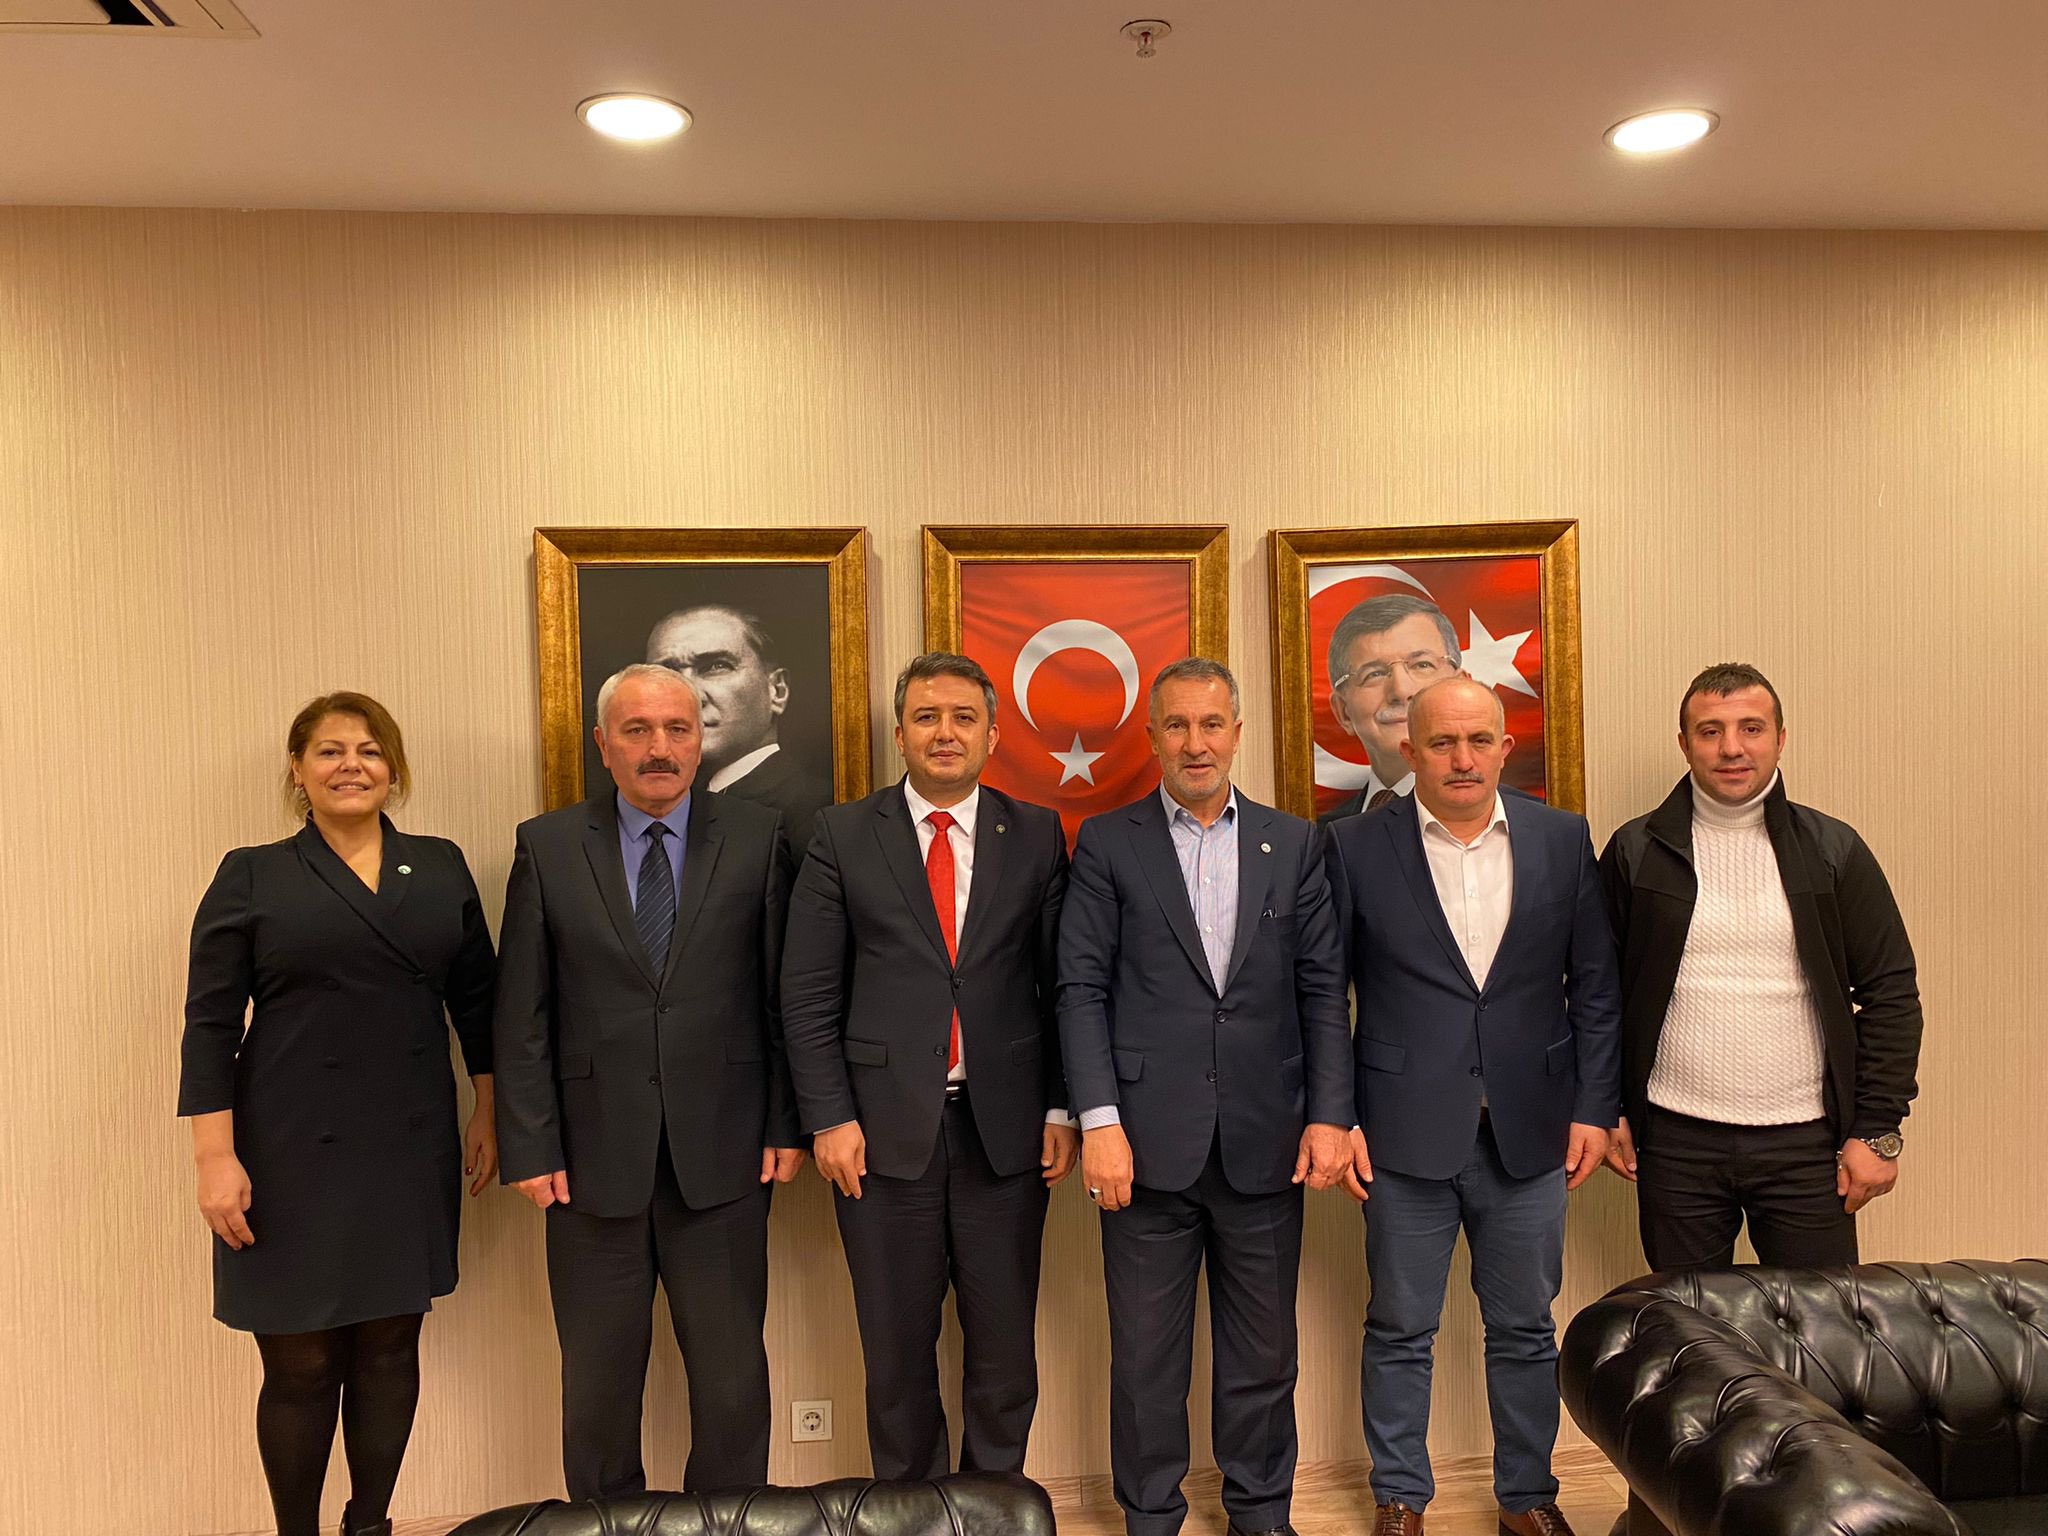 Sinop İli ve İlçeleri Kültür ve Yardımlaşma Derneği (SİYAD) Genel Başkanı Sn. Adnan Çeliker ve Yönetim Kurulu Üyeleri il başkanlığımızı ziyaret ettiler